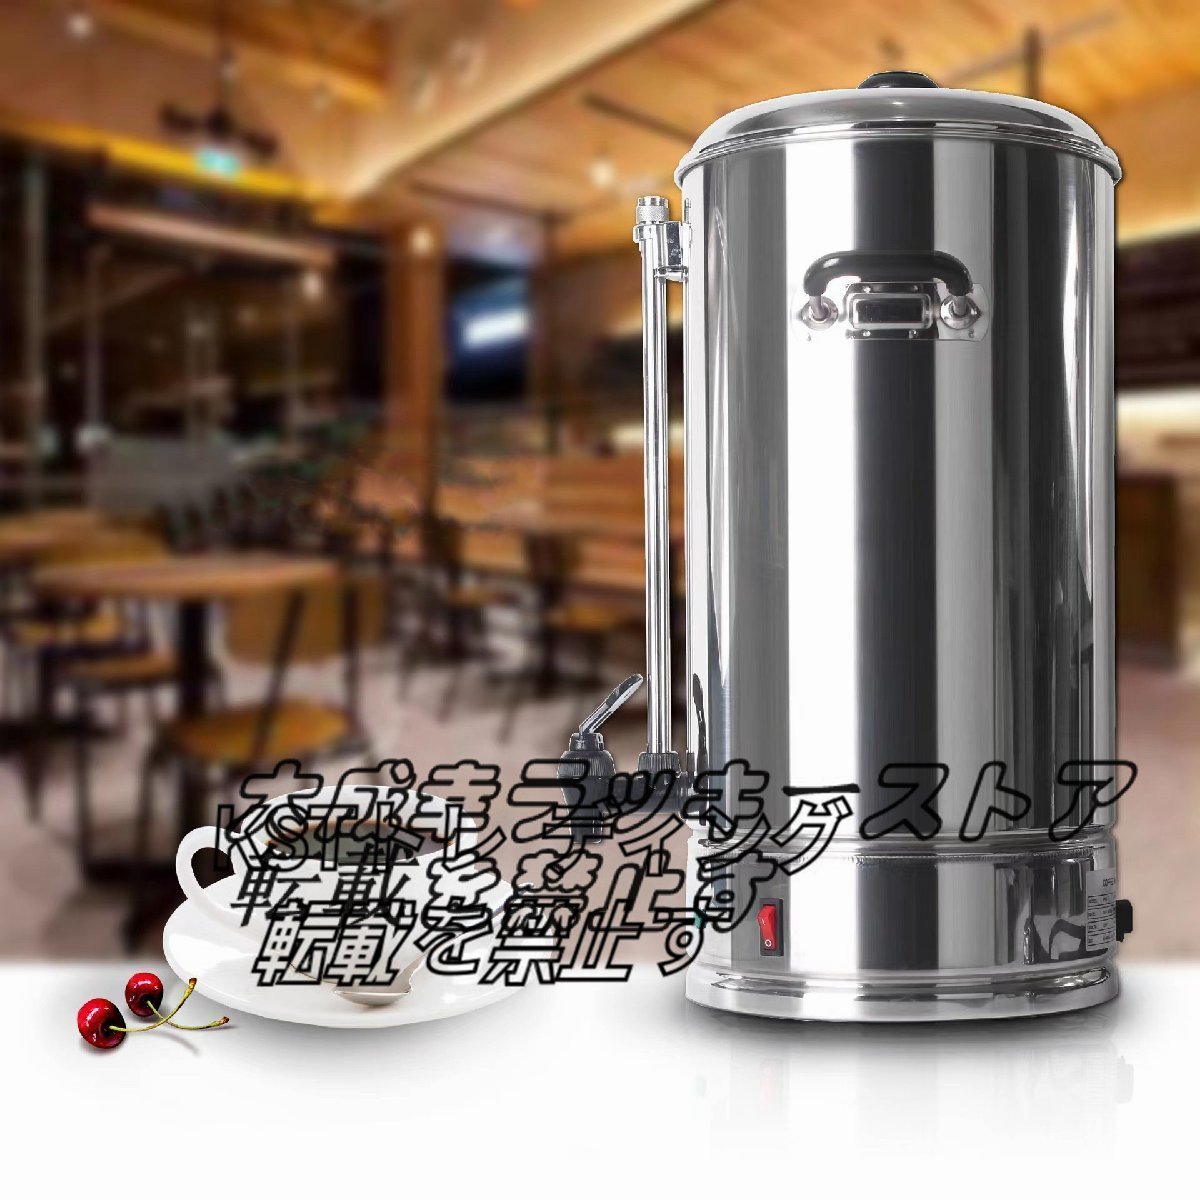 コーヒ保温桶 丸桶 加熱 保温 業務用/厨房機器/飲食店/店舗用品/屋台/出店